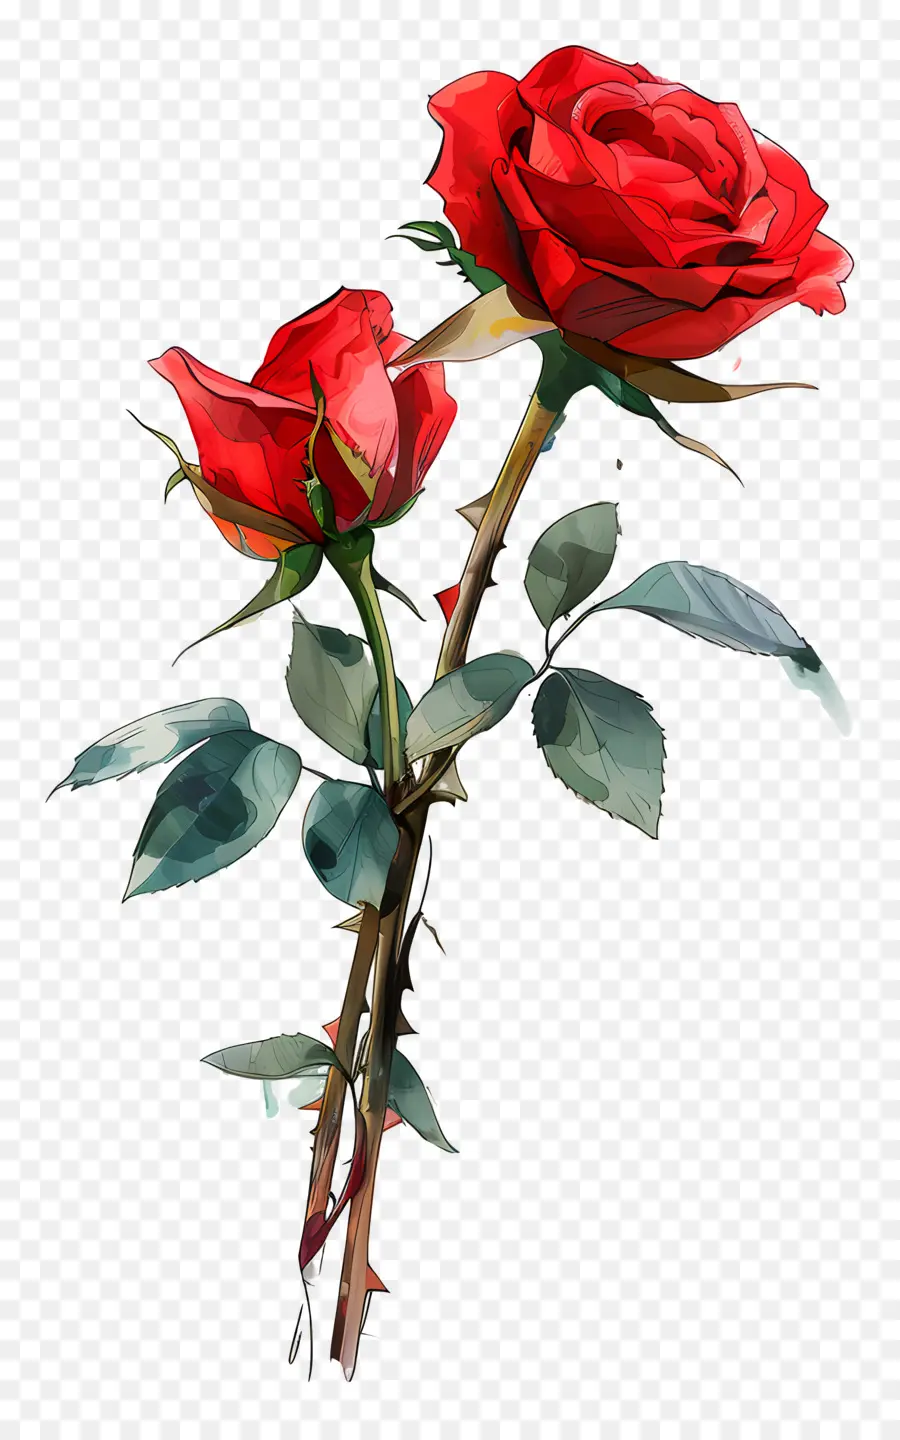 bông hồng đỏ - Hoa hồng đỏ thanh lịch với cánh hoa kín